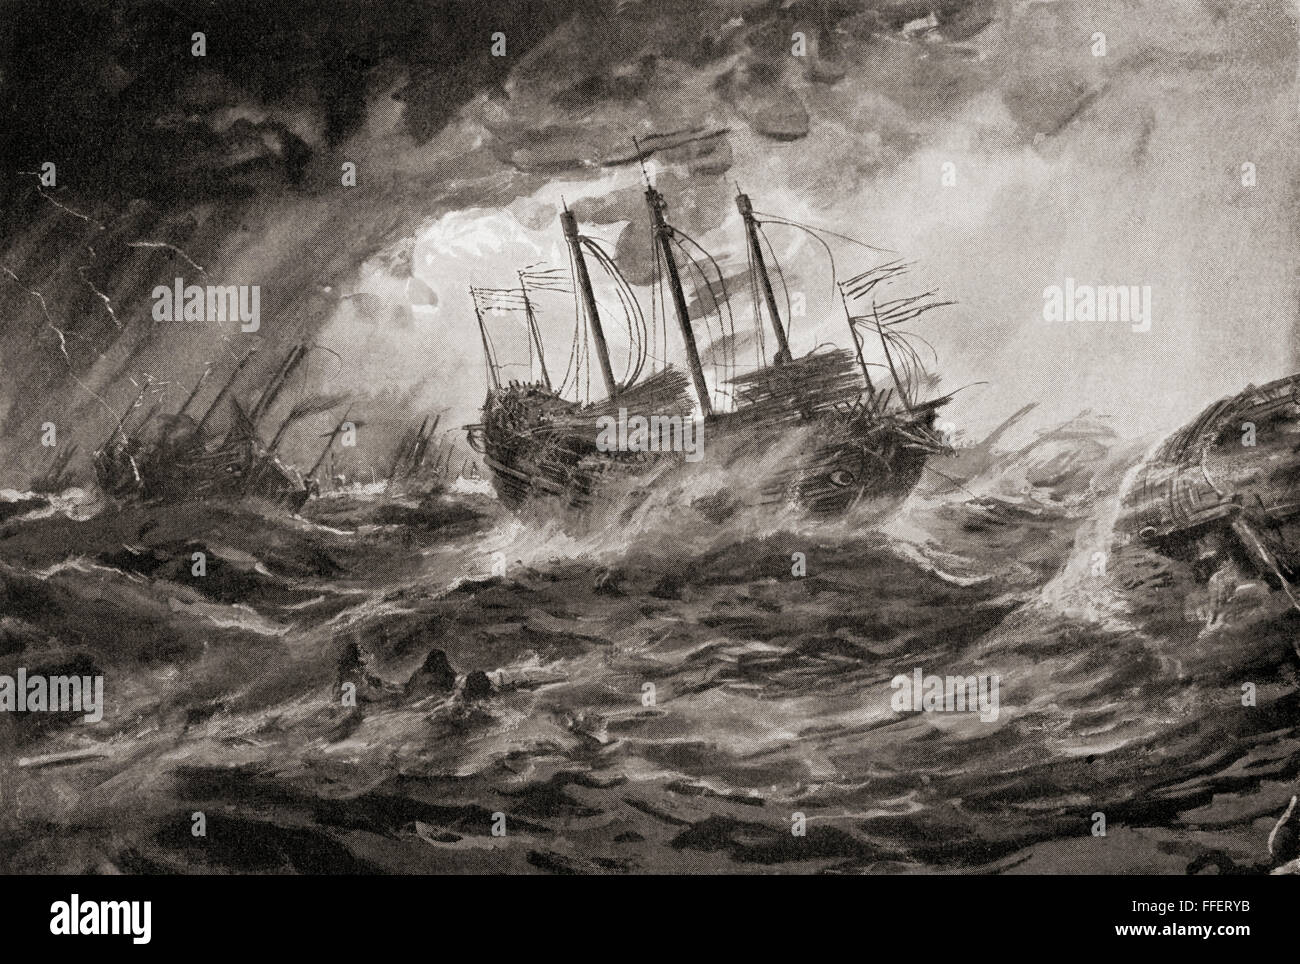 Das Wrack des Kublai Khan mongolische Flotte während der zweiten Invasion von Japan 1281 durch den Taifun, Kamikaze, die die meisten der Armada vernichtet. Von Hutchinson's Geschichte der Nationen, veröffentlicht 1915. Stockfoto